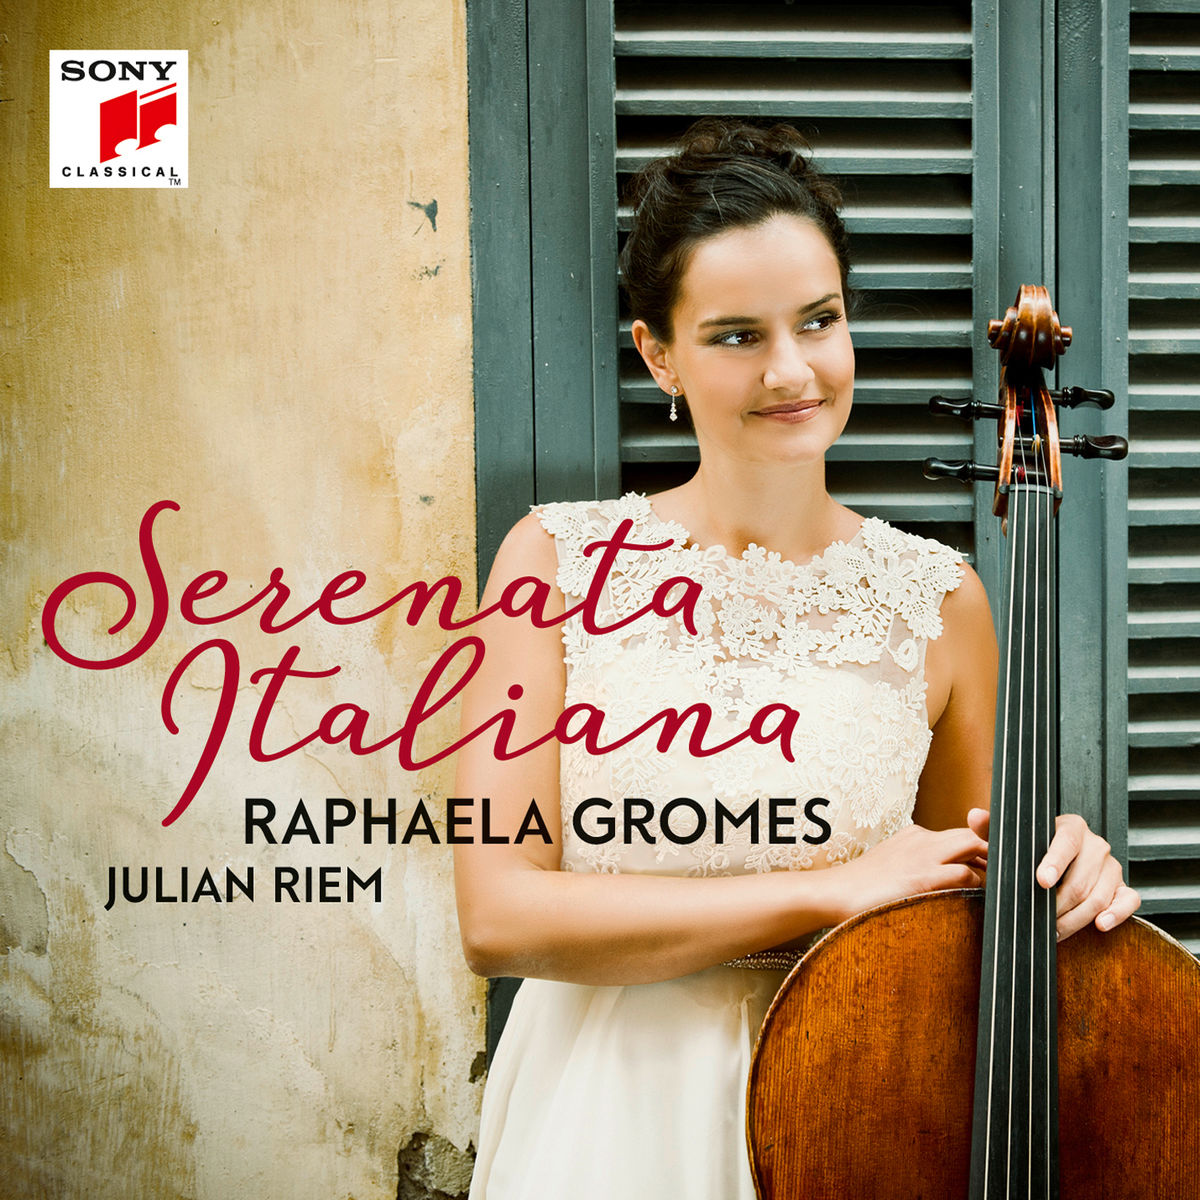 Raphaela Gromes – Serenata Italiana (2017) [Qobuz FLAC 24bit/96kHz]